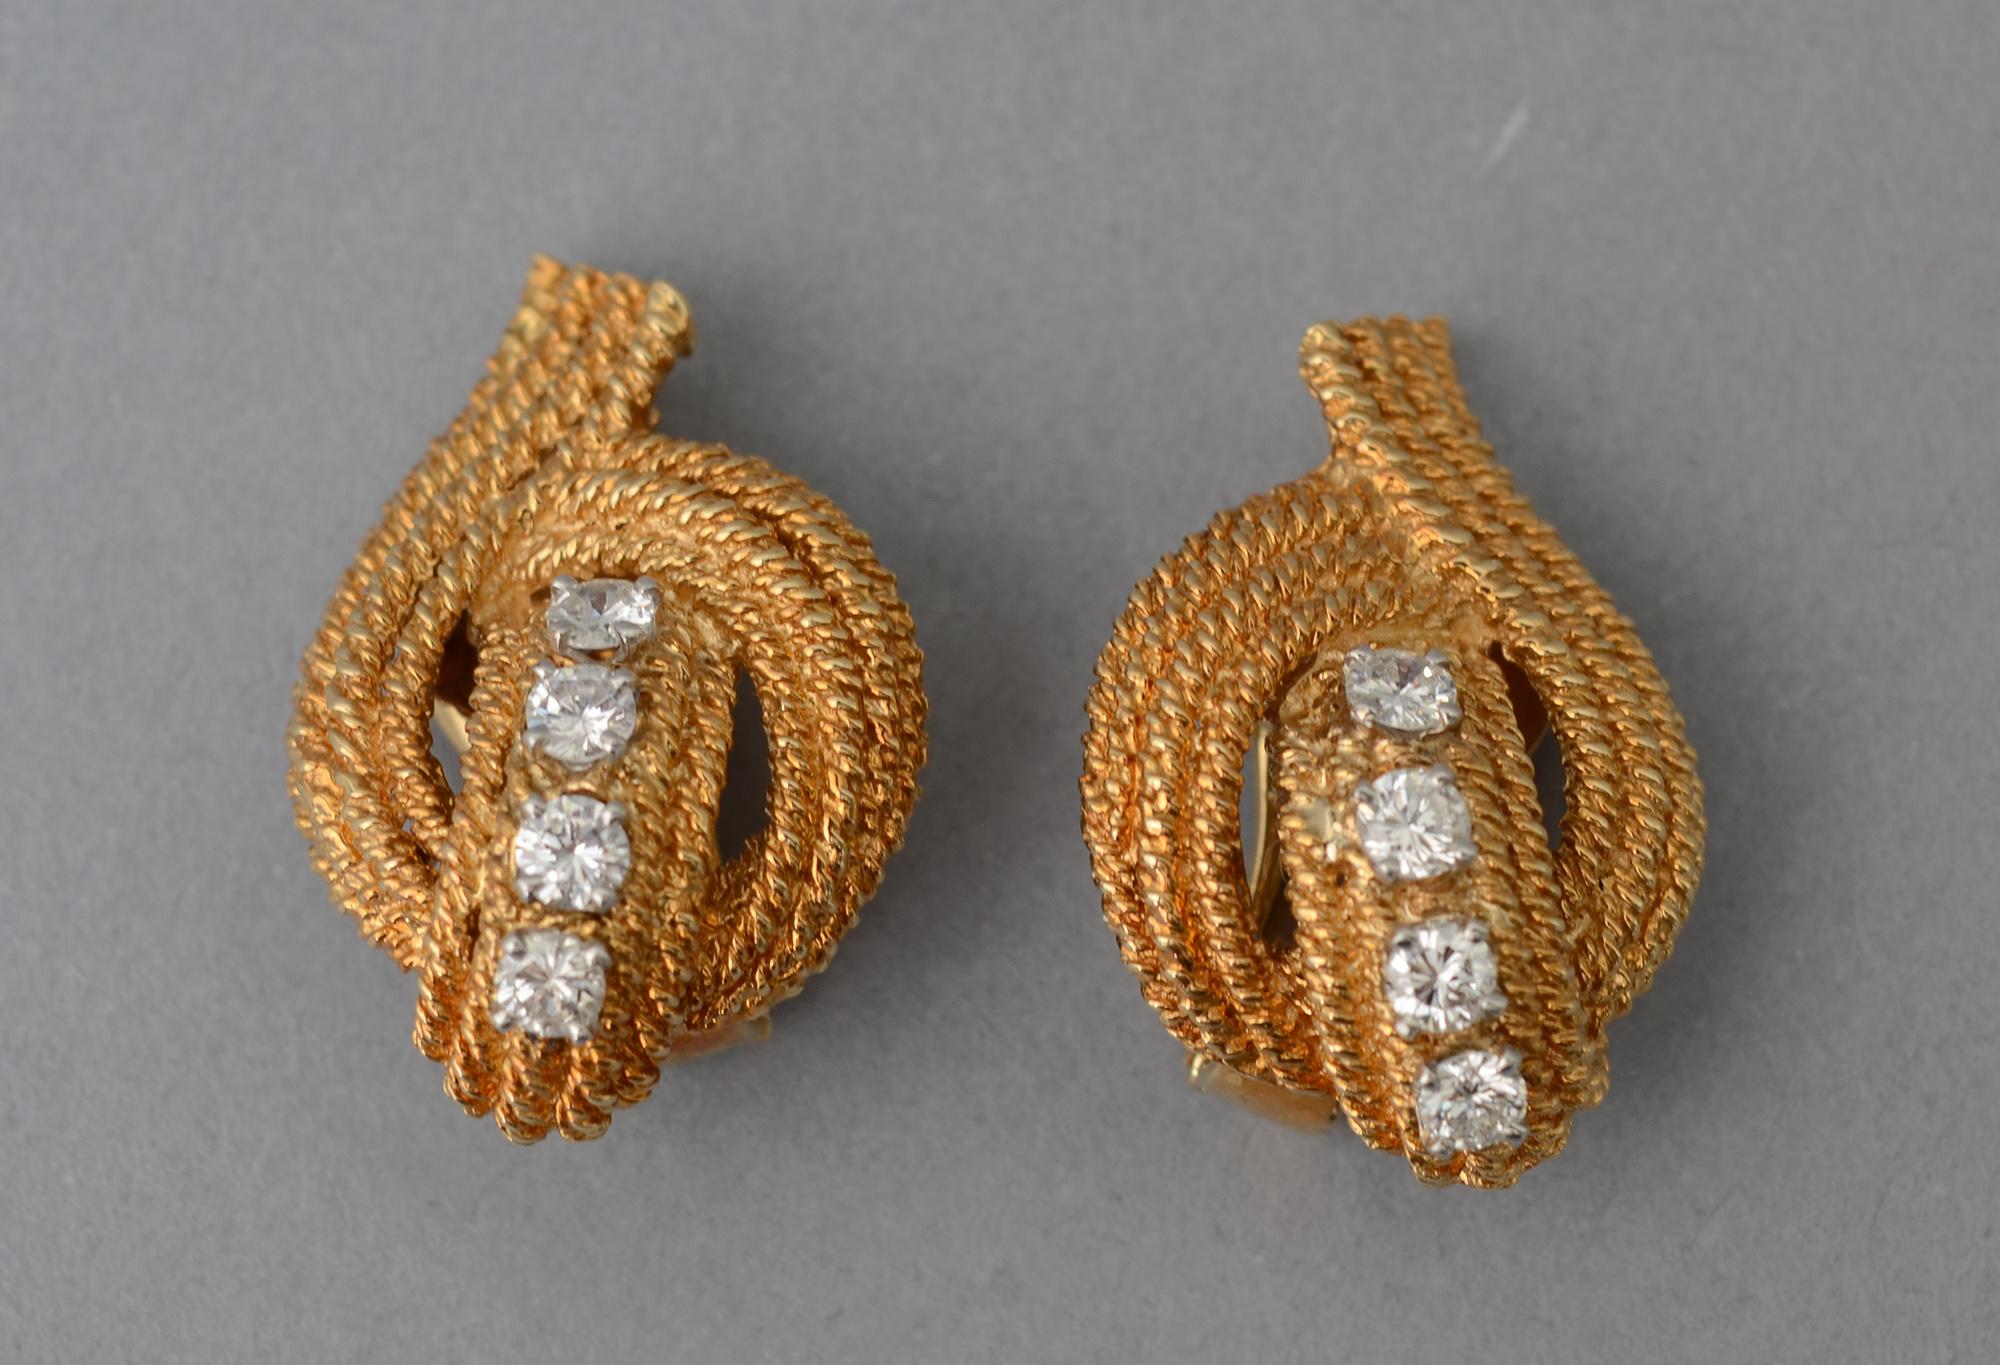 Elégants clips d'oreilles en or et diamants de David Webb. Chaque boucle d'oreille comporte 4 diamants d'un poids total d'environ 1,25 carat. Elles sont entourées de trois rangées d'or torsadé, dans une forme gracieuse et élégante.  design.
Les